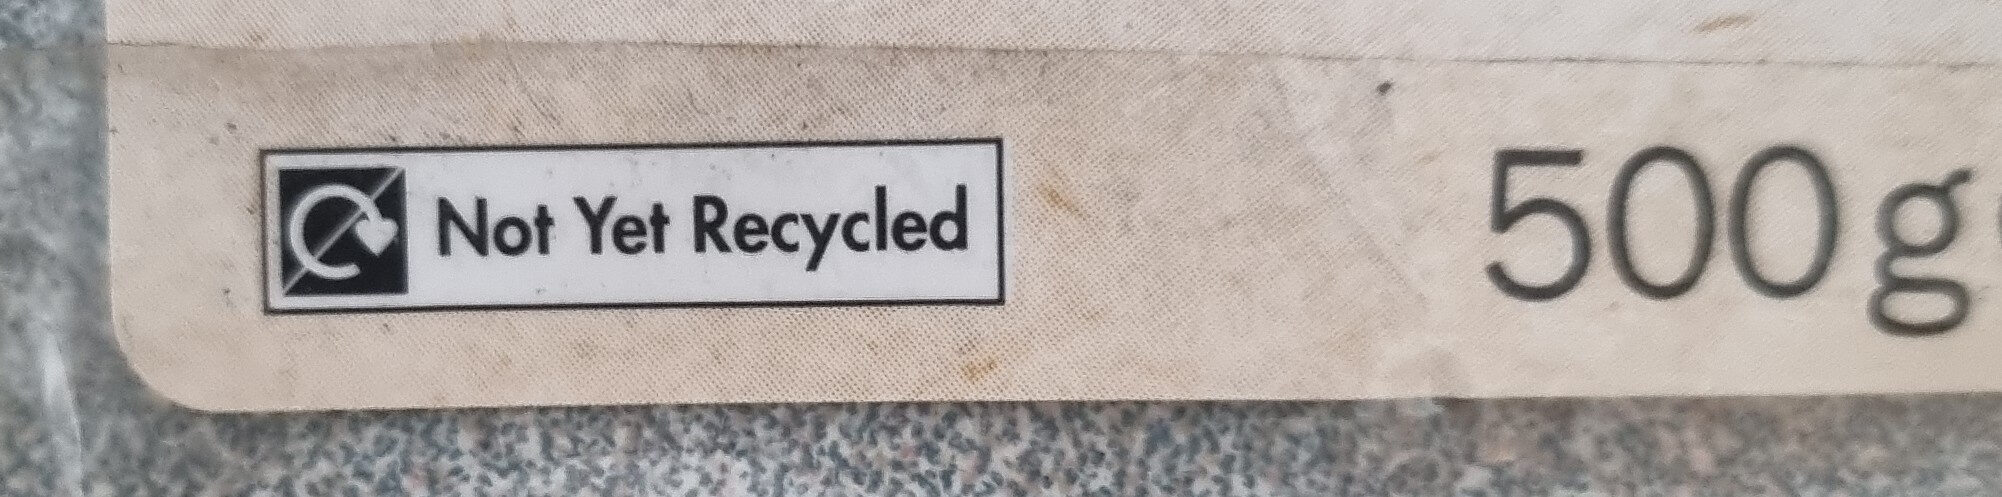 τορτίγια Λίντλ ολικής - Recycling instructions and/or packaging information